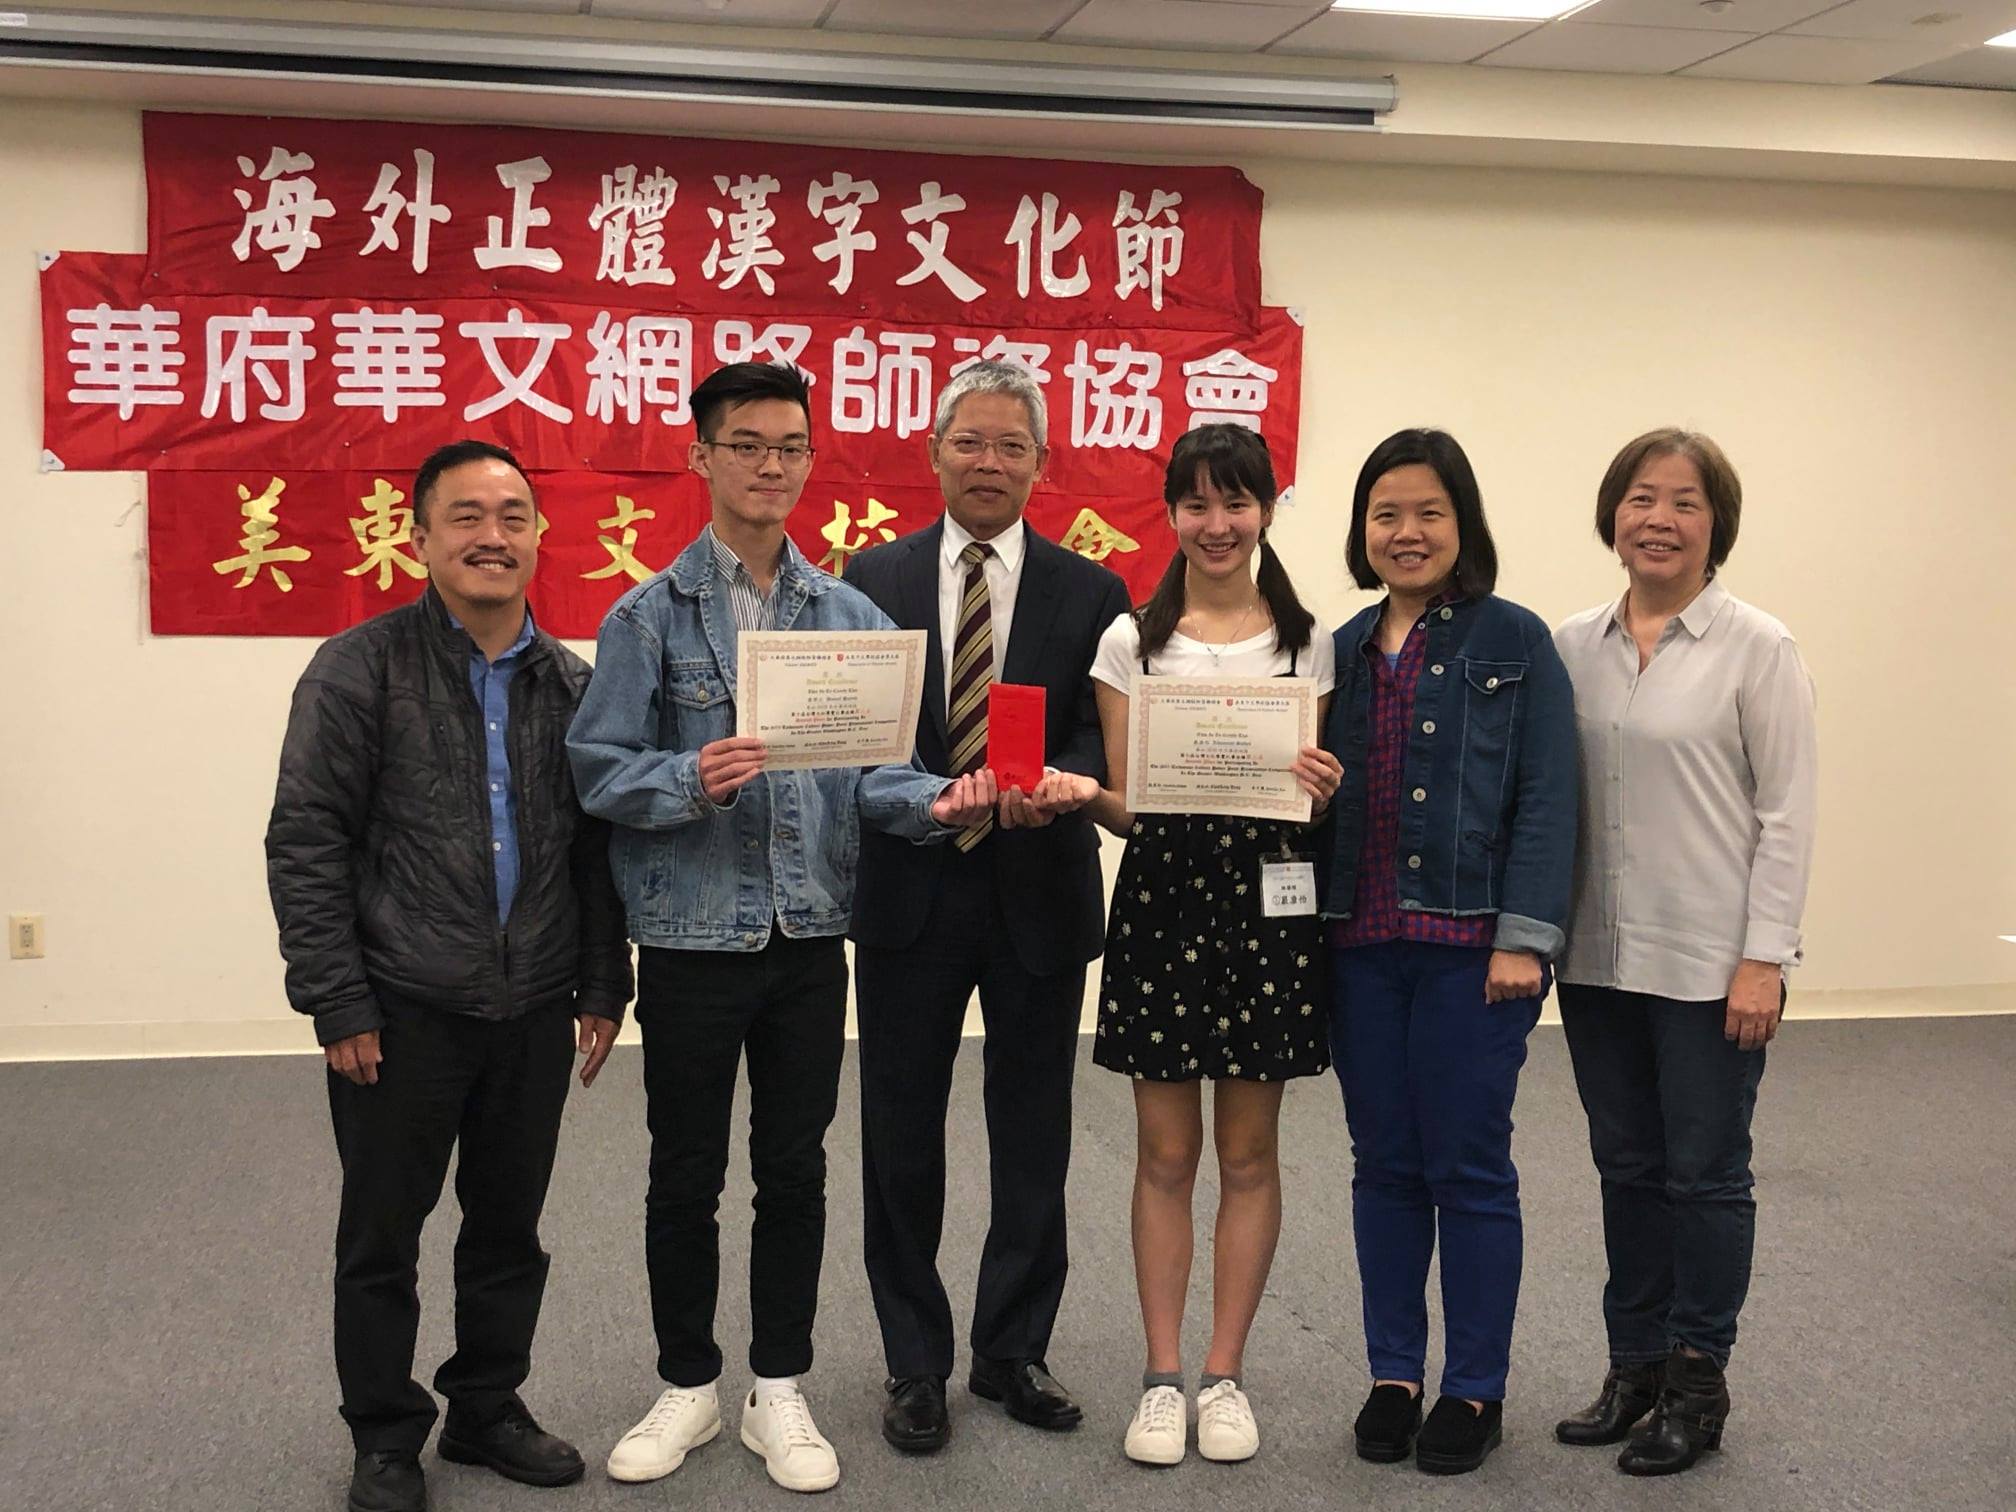 維華中文學校黃學正同學(左持獎狀)與嚴康怡同學(右持獎狀)榮獲第二名